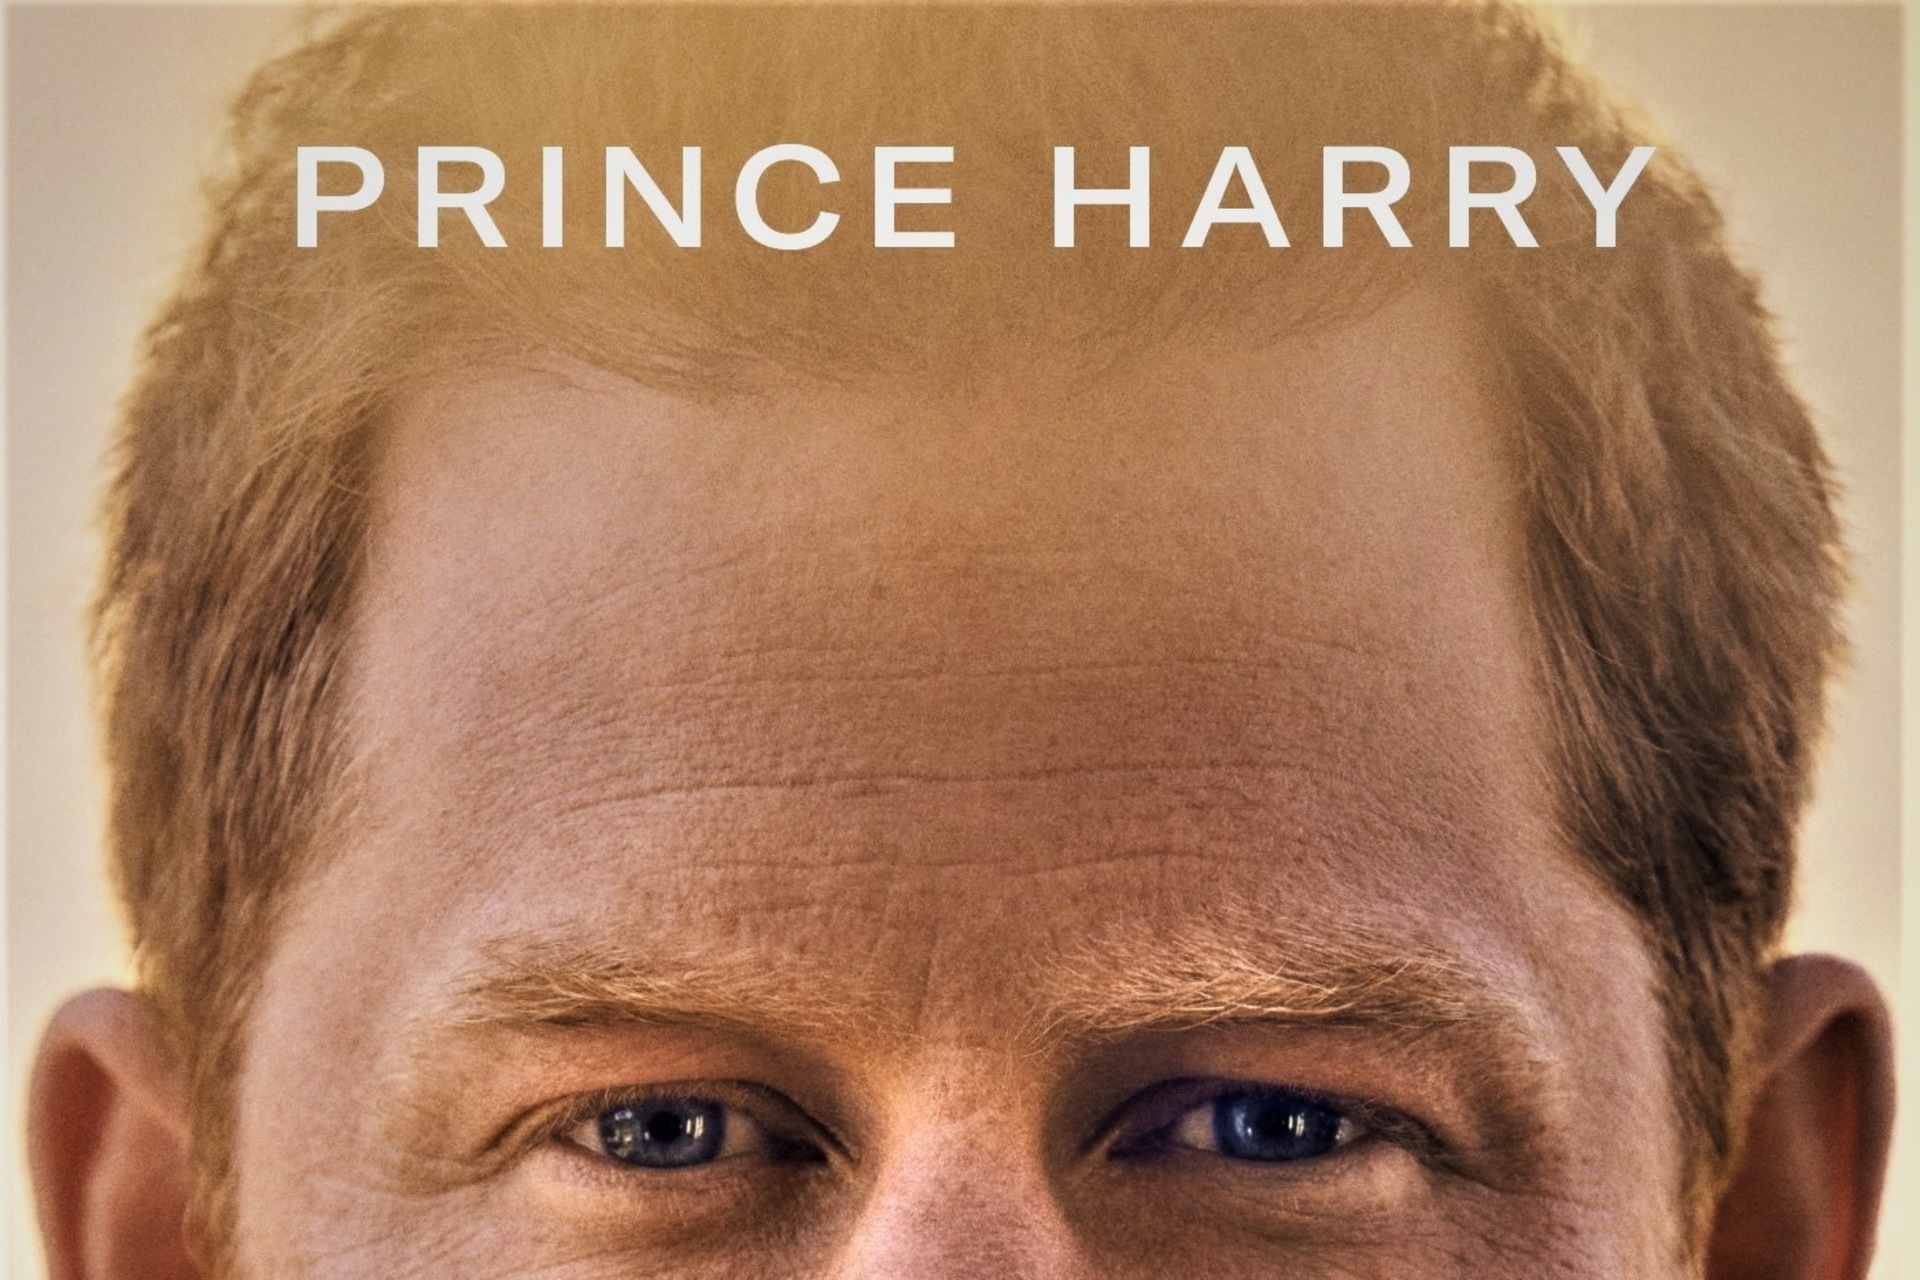 Spare: la parte superiore della copertina del libro autobiografico del Principe Harry, Duca di Sussex, nella versione italiana pubblicata da Mondadori con il titolo “Spare, il minore”